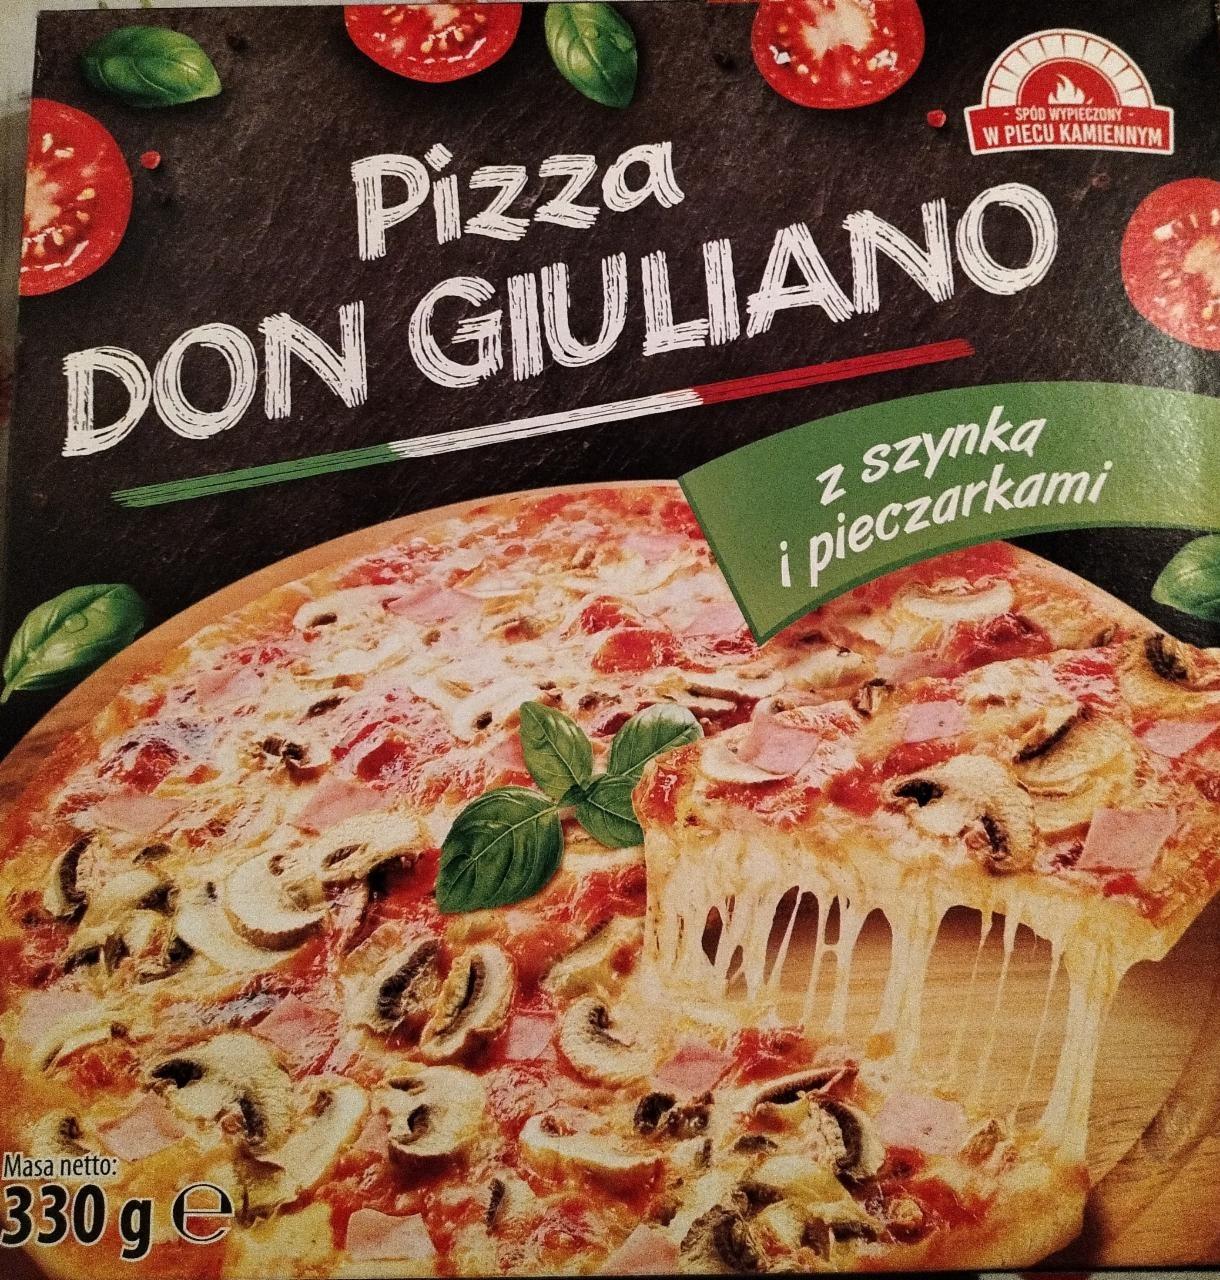 Zdjęcia - Pizza z szynką i pieczarkami DON GIULIANO